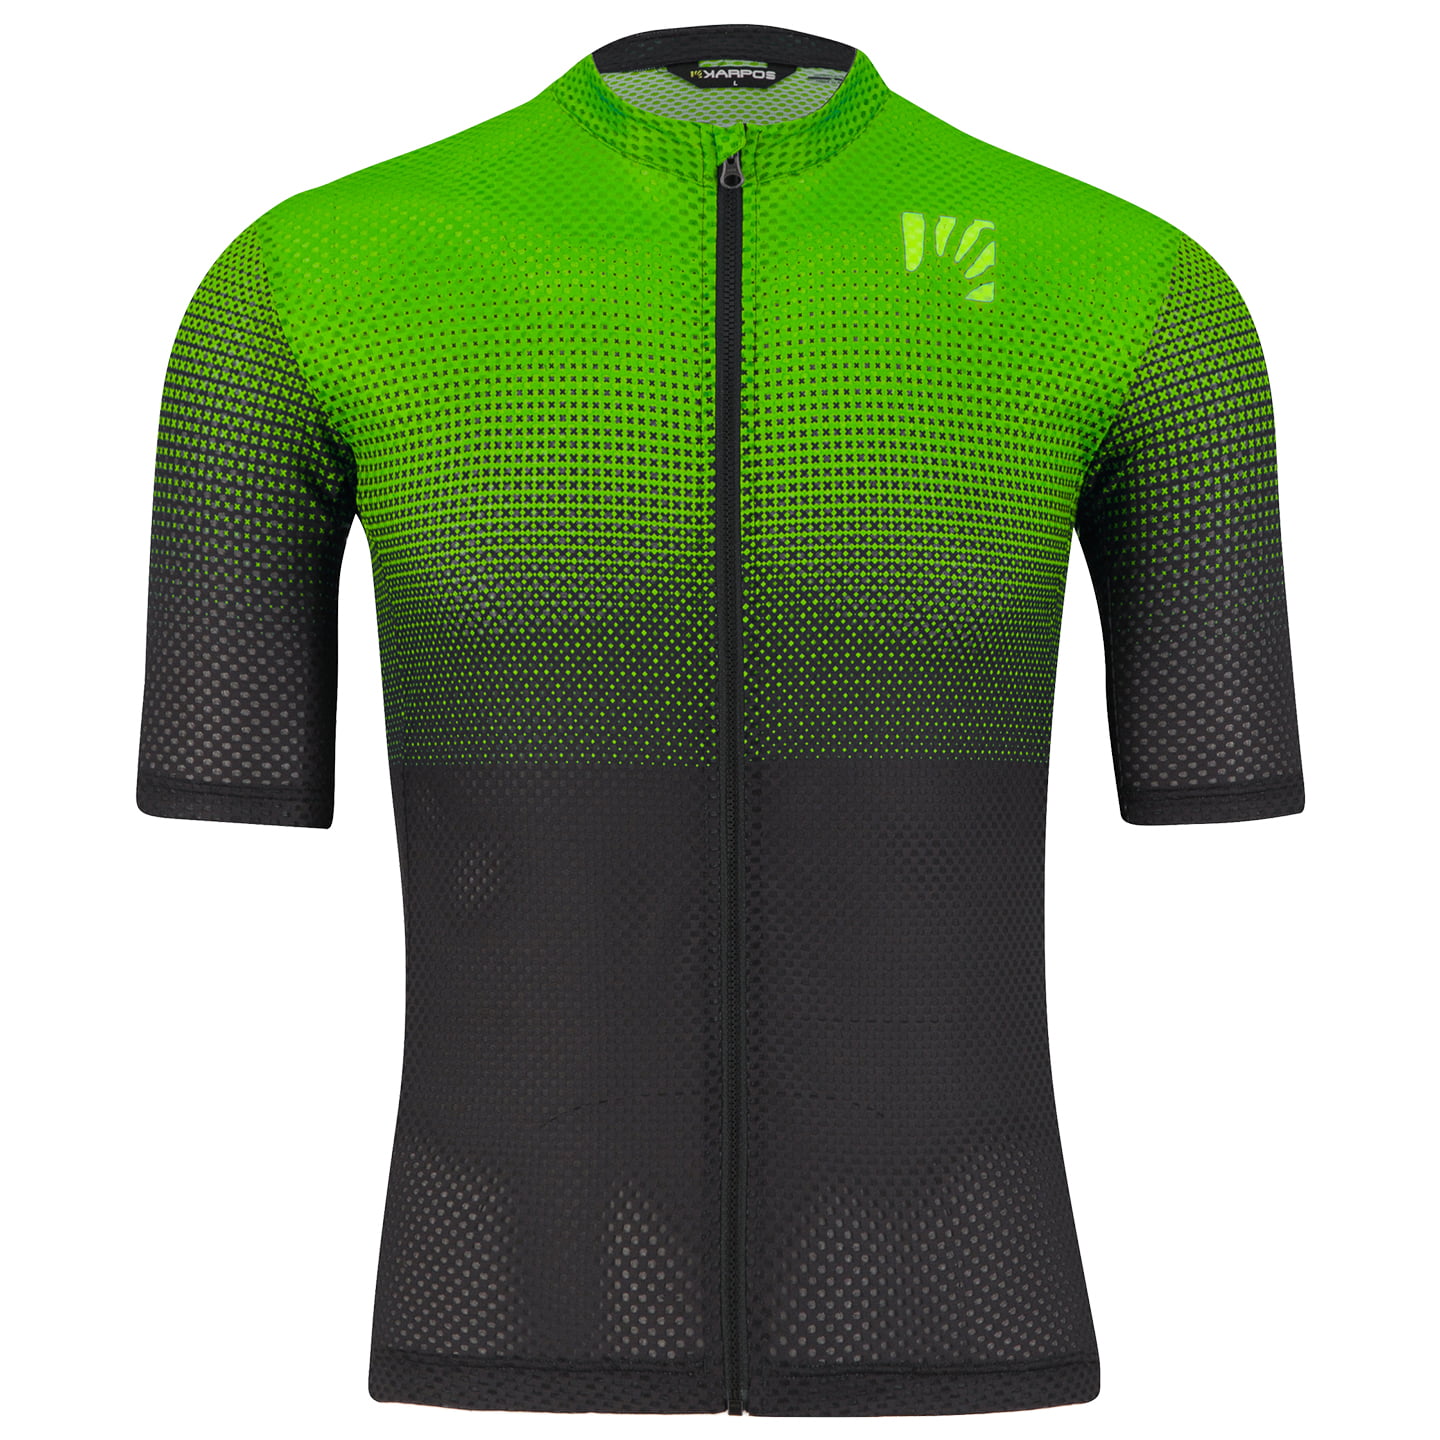 KARPOS Val Viola Short Sleeve Jersey Short Sleeve Jersey, for men, size L, Cycling jersey, Cycling clothing